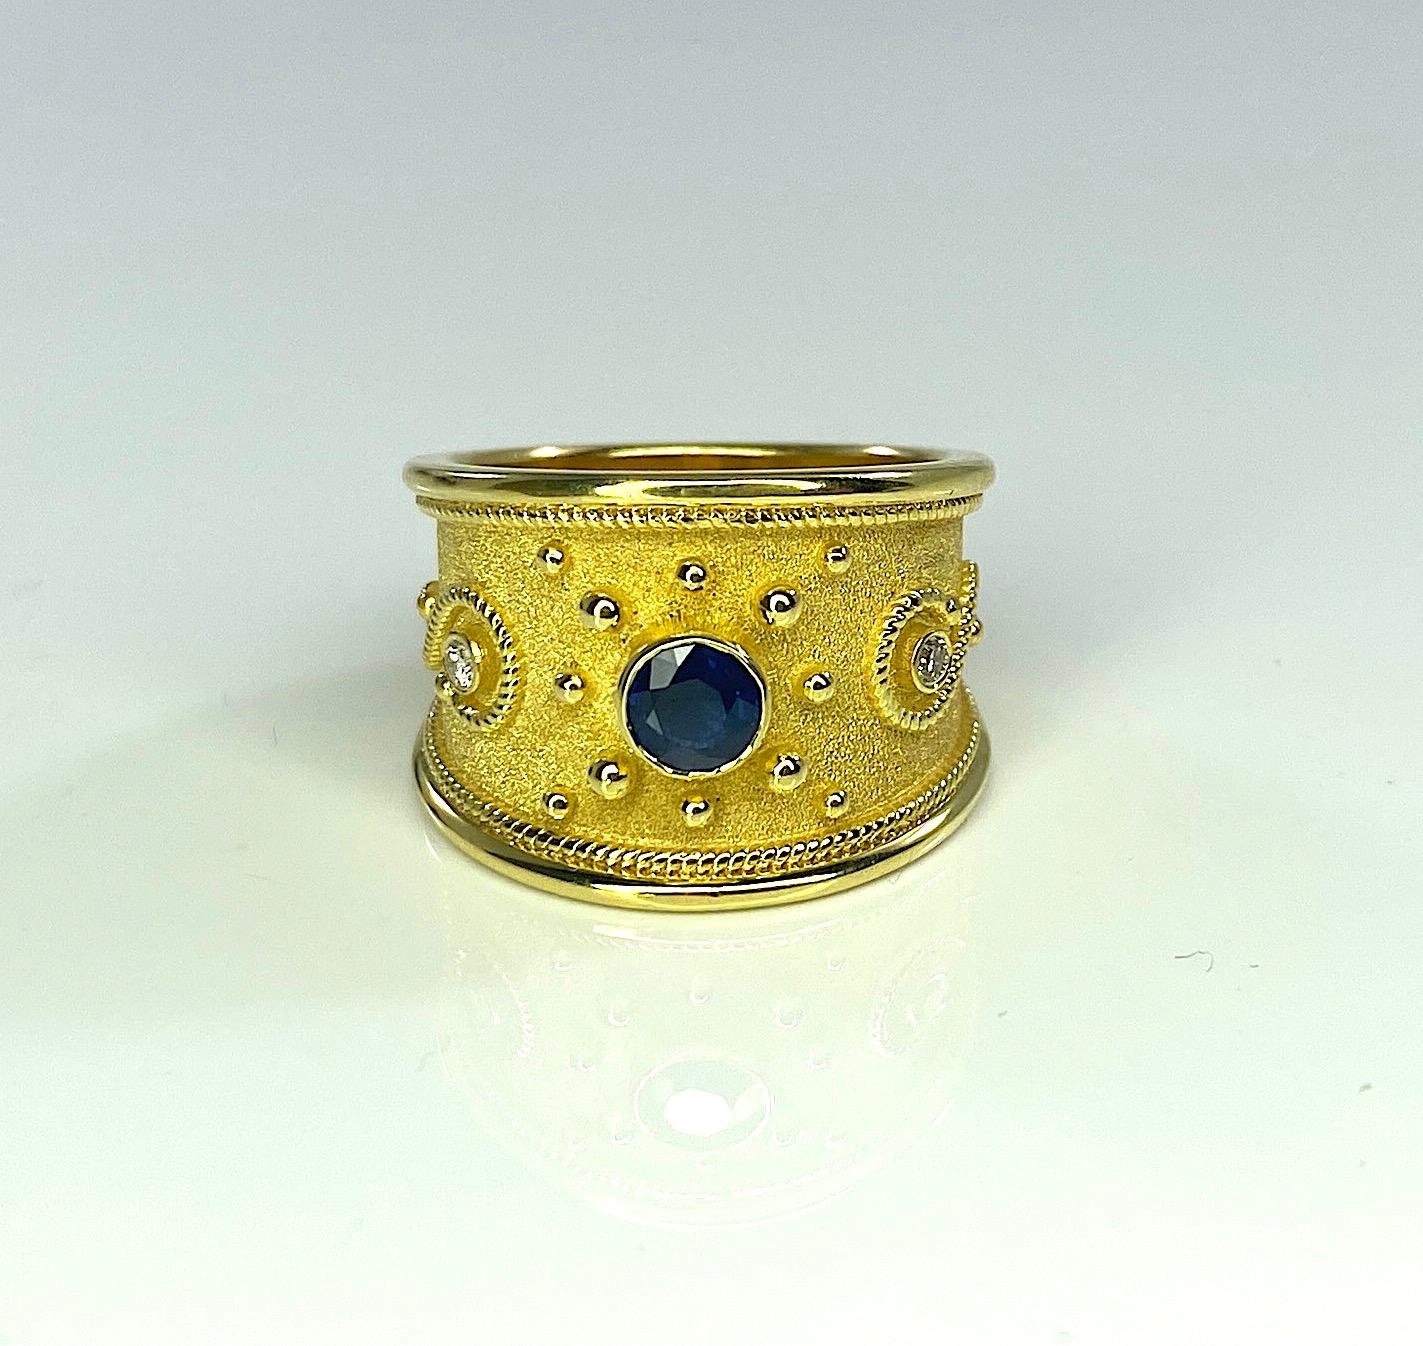 Sie bewundern den S.Georgios Designerring, handgefertigt aus massivem 18 Karat Gelbgold. Der Ring ist mikroskopisch genau mit einzeln hinzugefügten Perlen und gedrehten Drähten aus 18 Karat Gelbgold verziert. Der byzantinische Look wird durch den